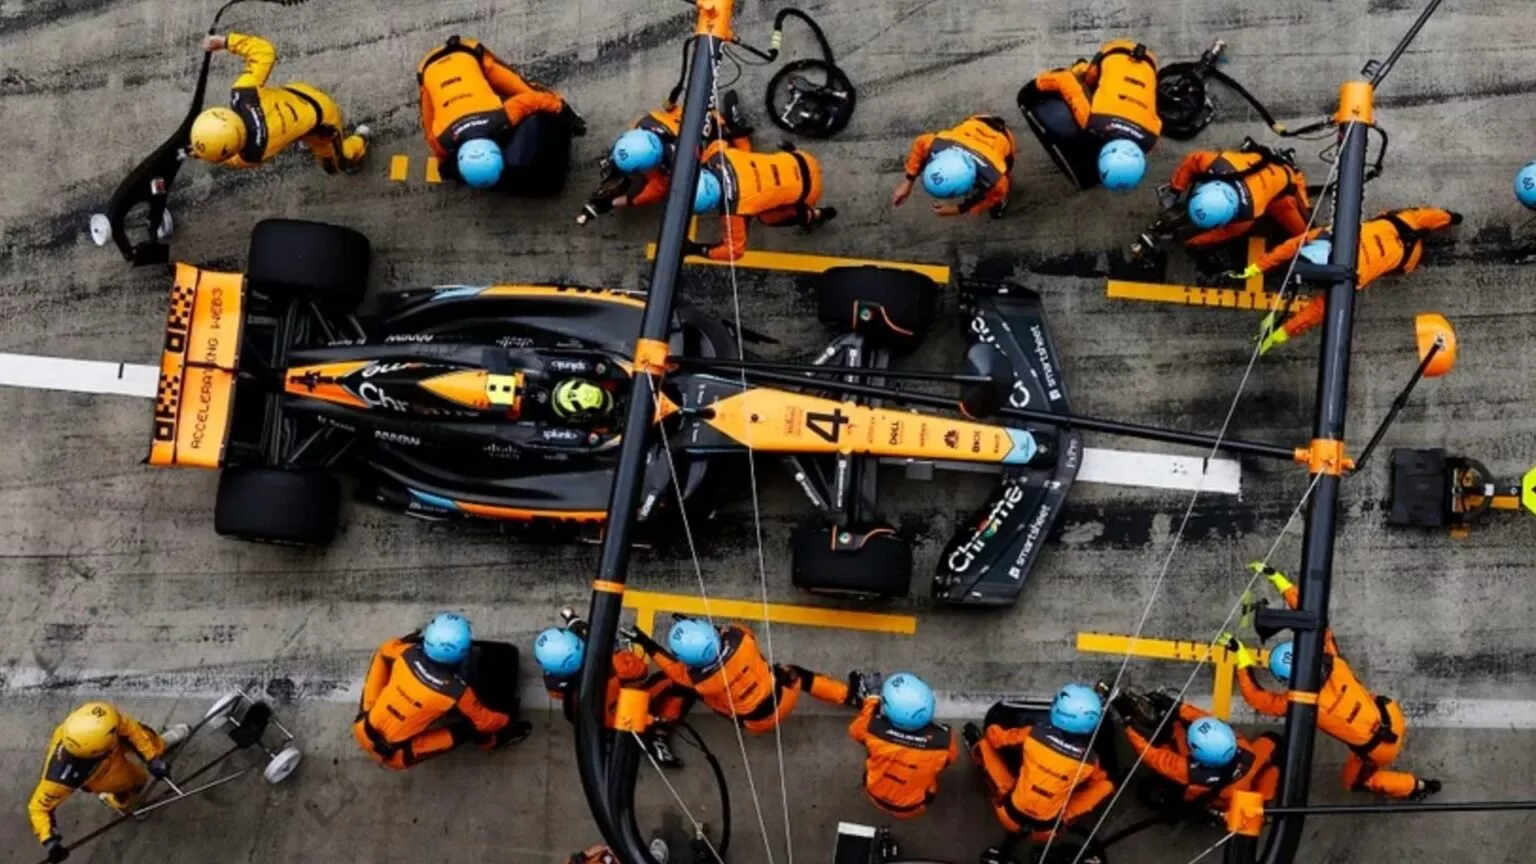 McLaren quebra recorde mundial de pit stop no GP do Catar! Veja o vídeo